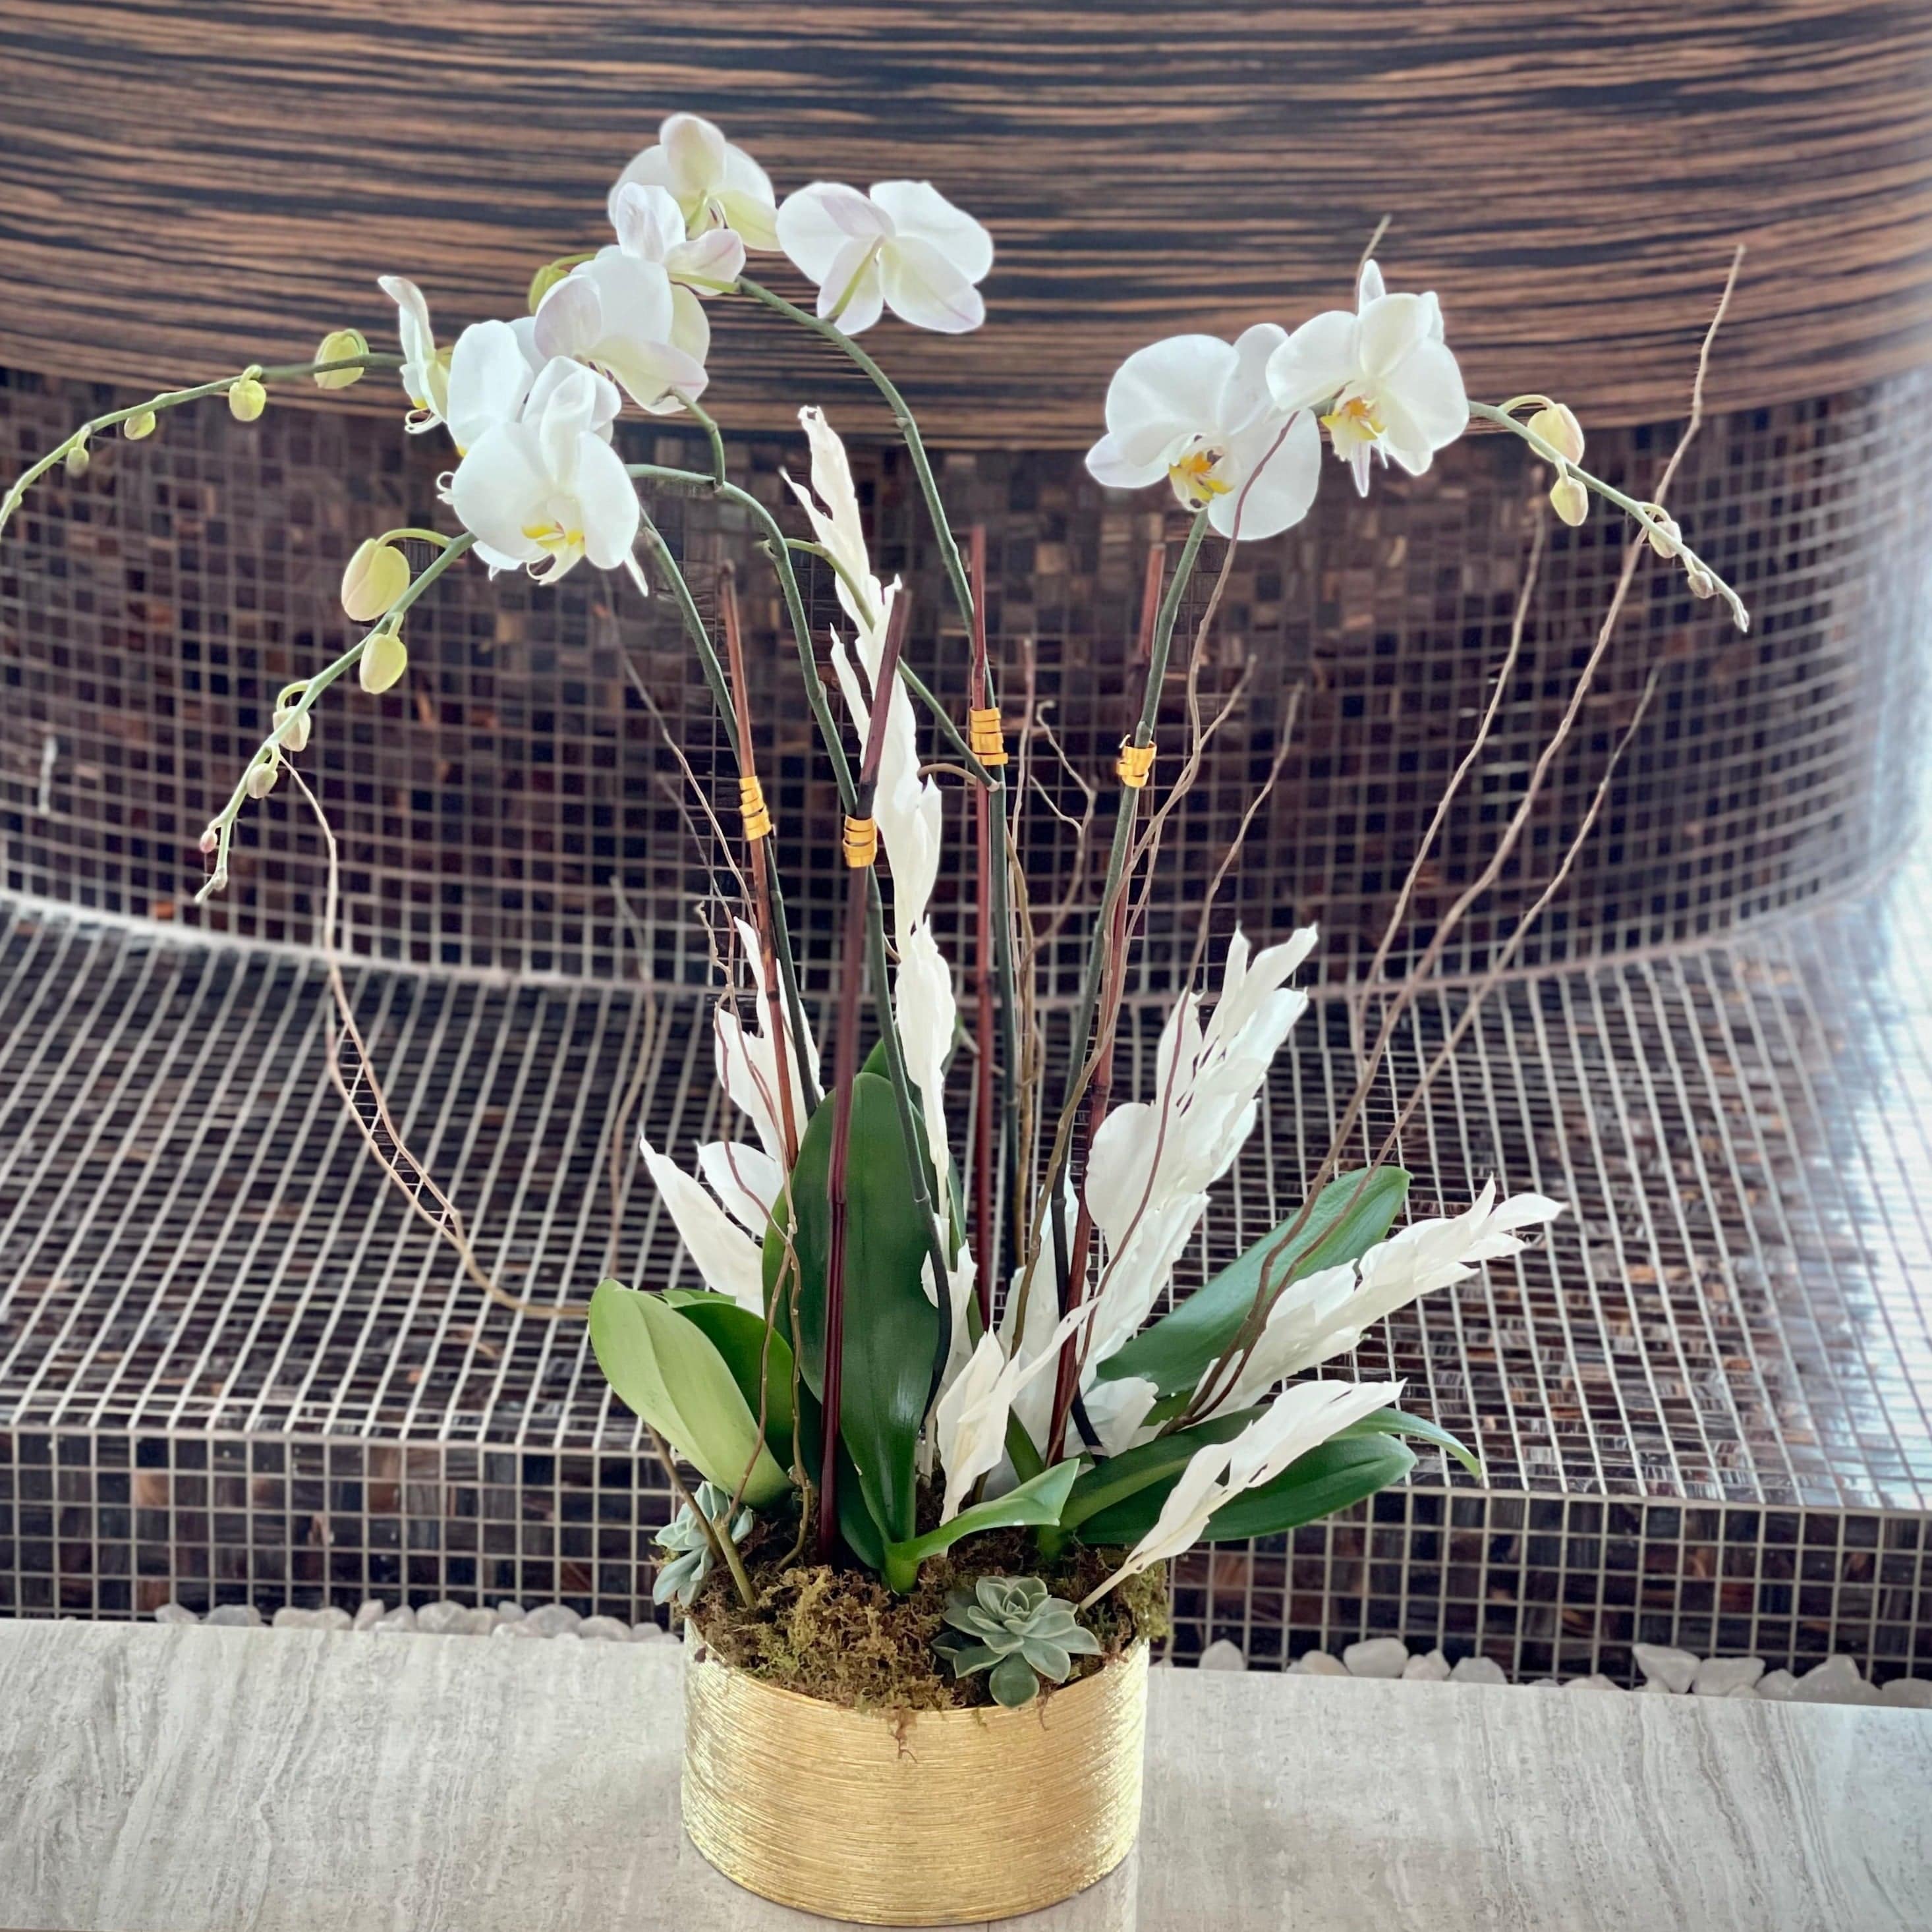 Planted Orchids with Succulents Arrangement